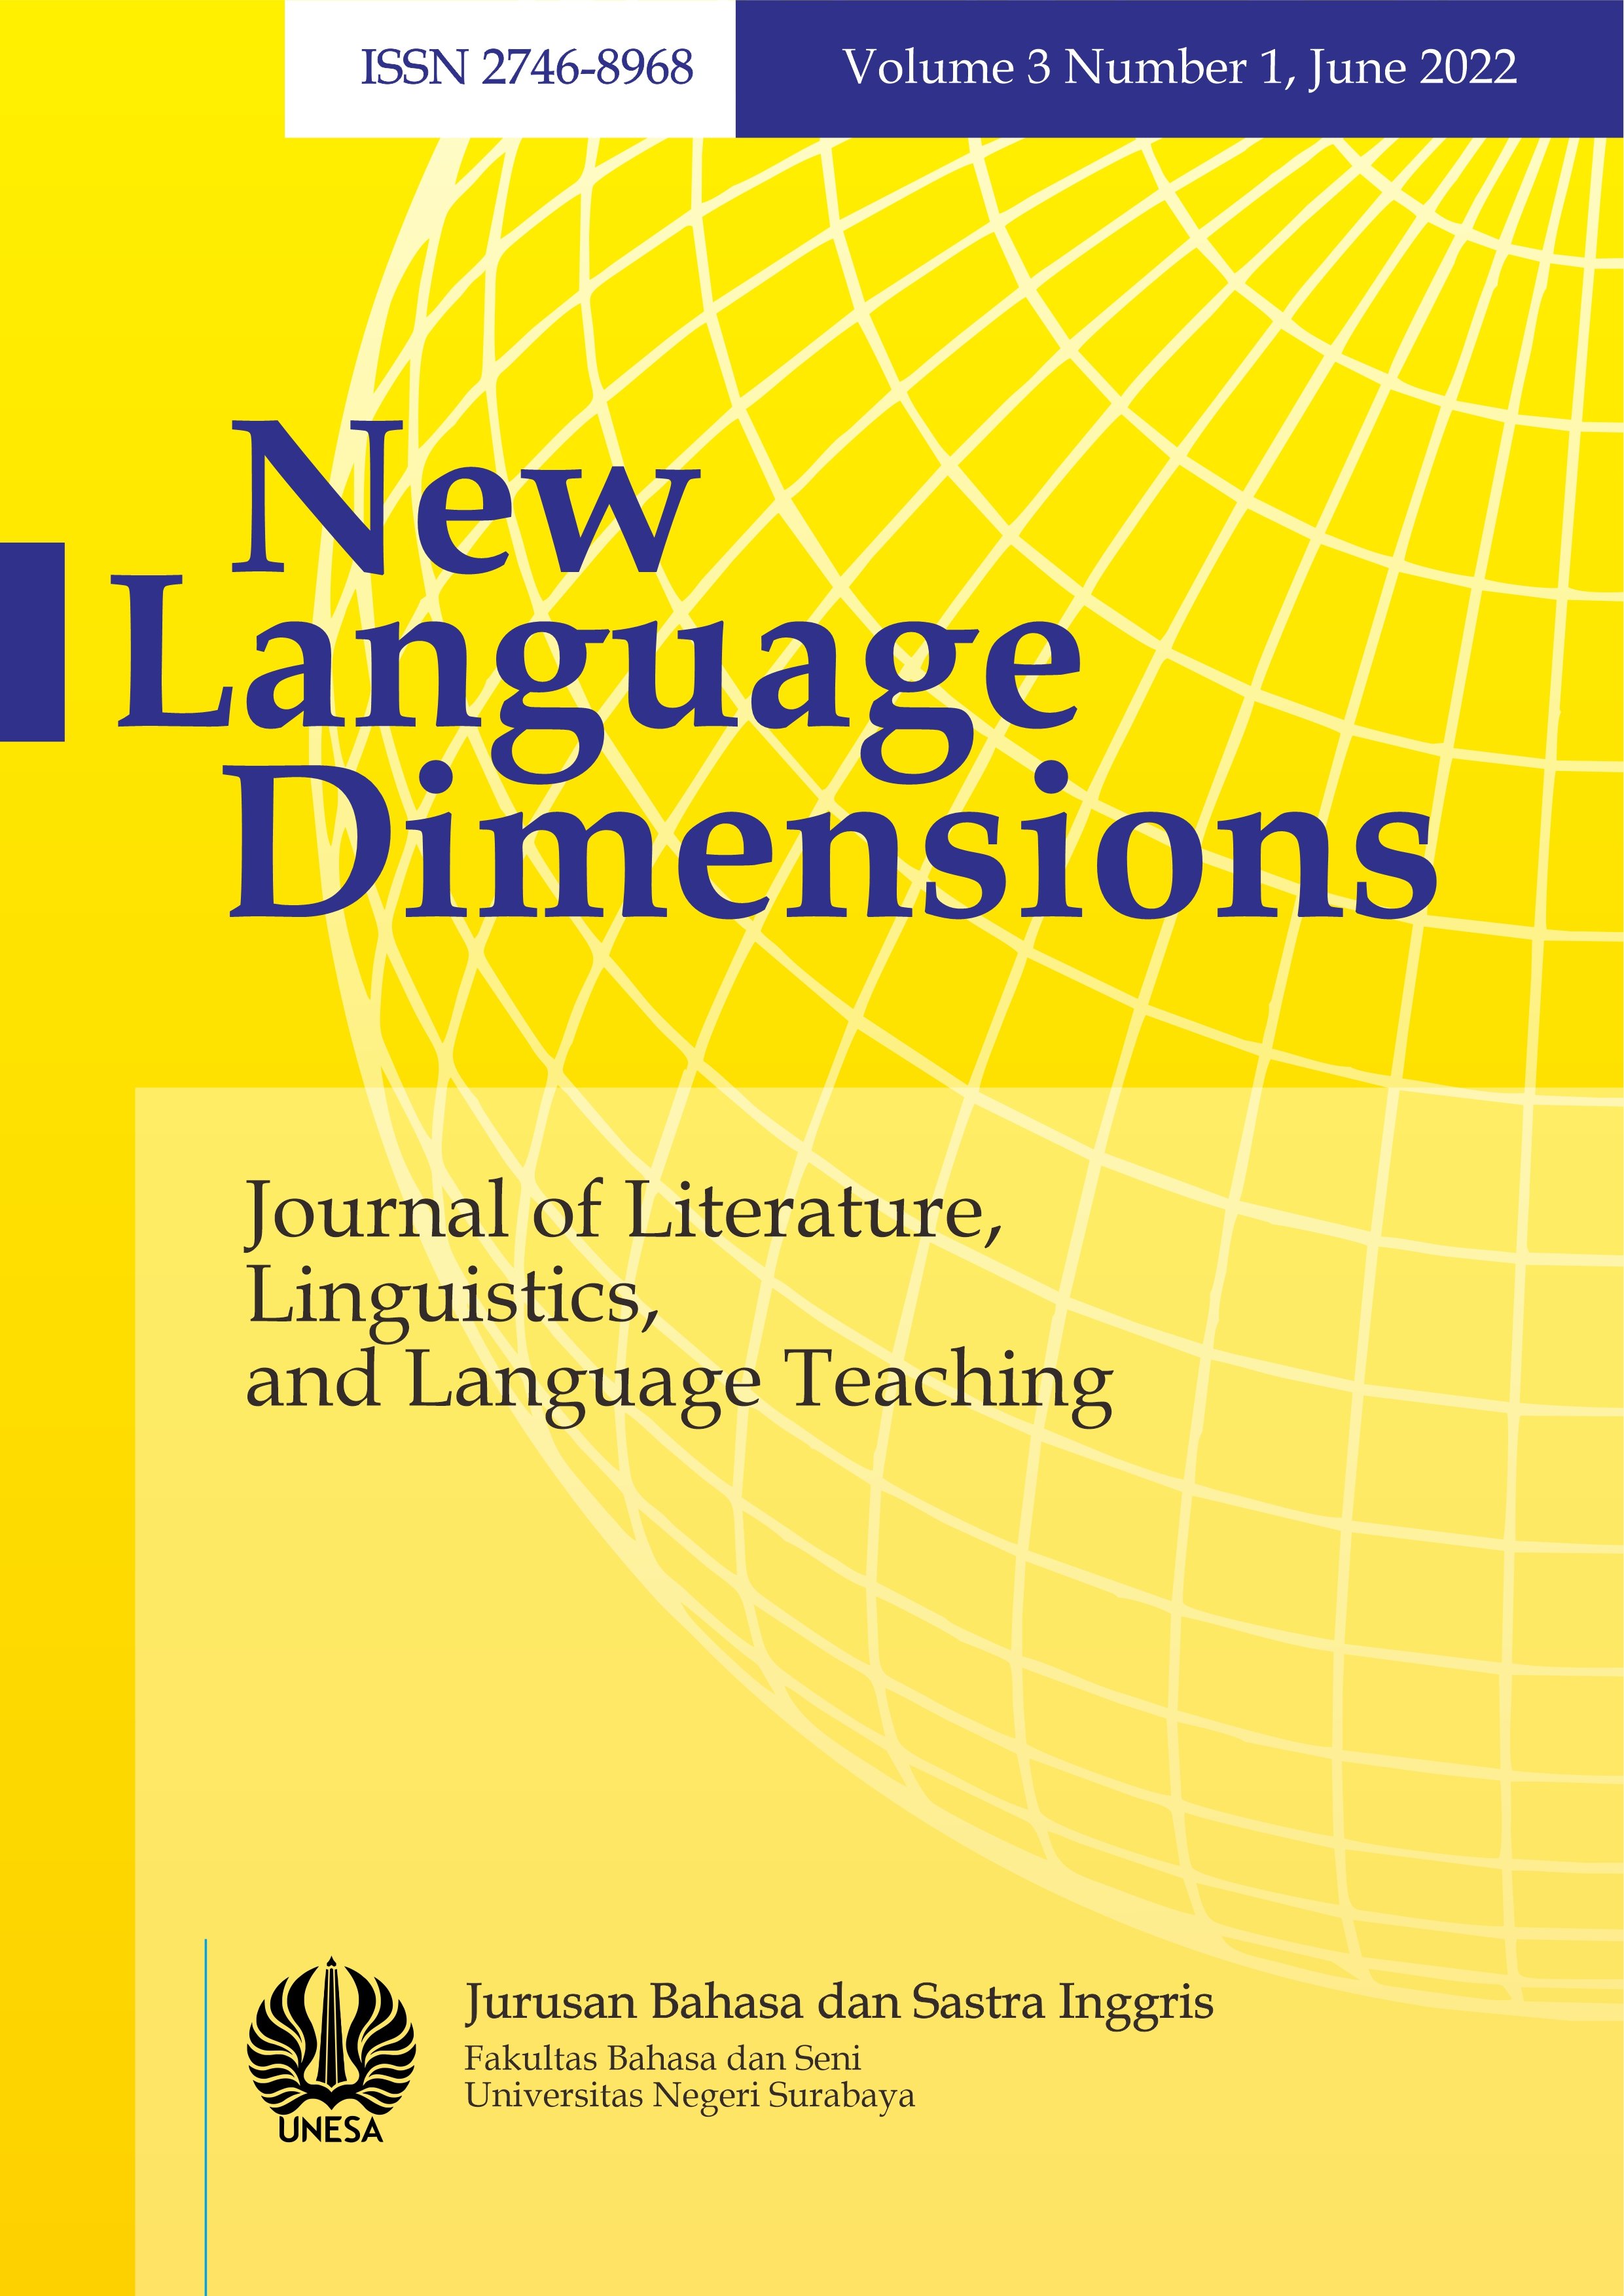 					View Vol. 3 No. 1 (2022): New Language Dimensions Vol. 3 No. 1, June 2022
				